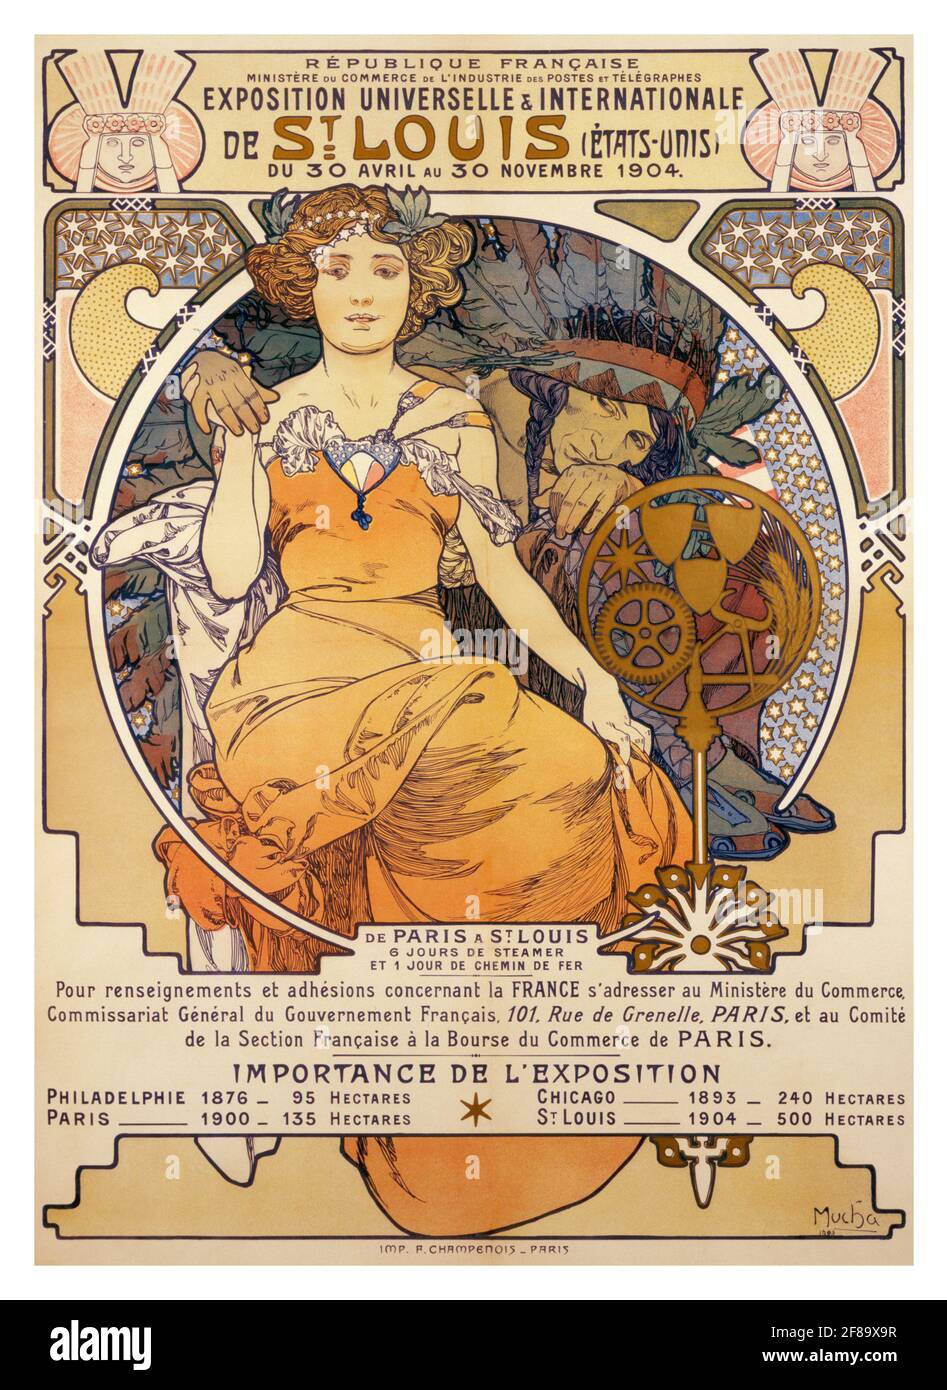 Exposition Universelles et Internationale de St. Louis (Etats Unis) du 30 Avril au 30 Novembre. (Poster advertising the 1904 World's Fair). Stock Photo